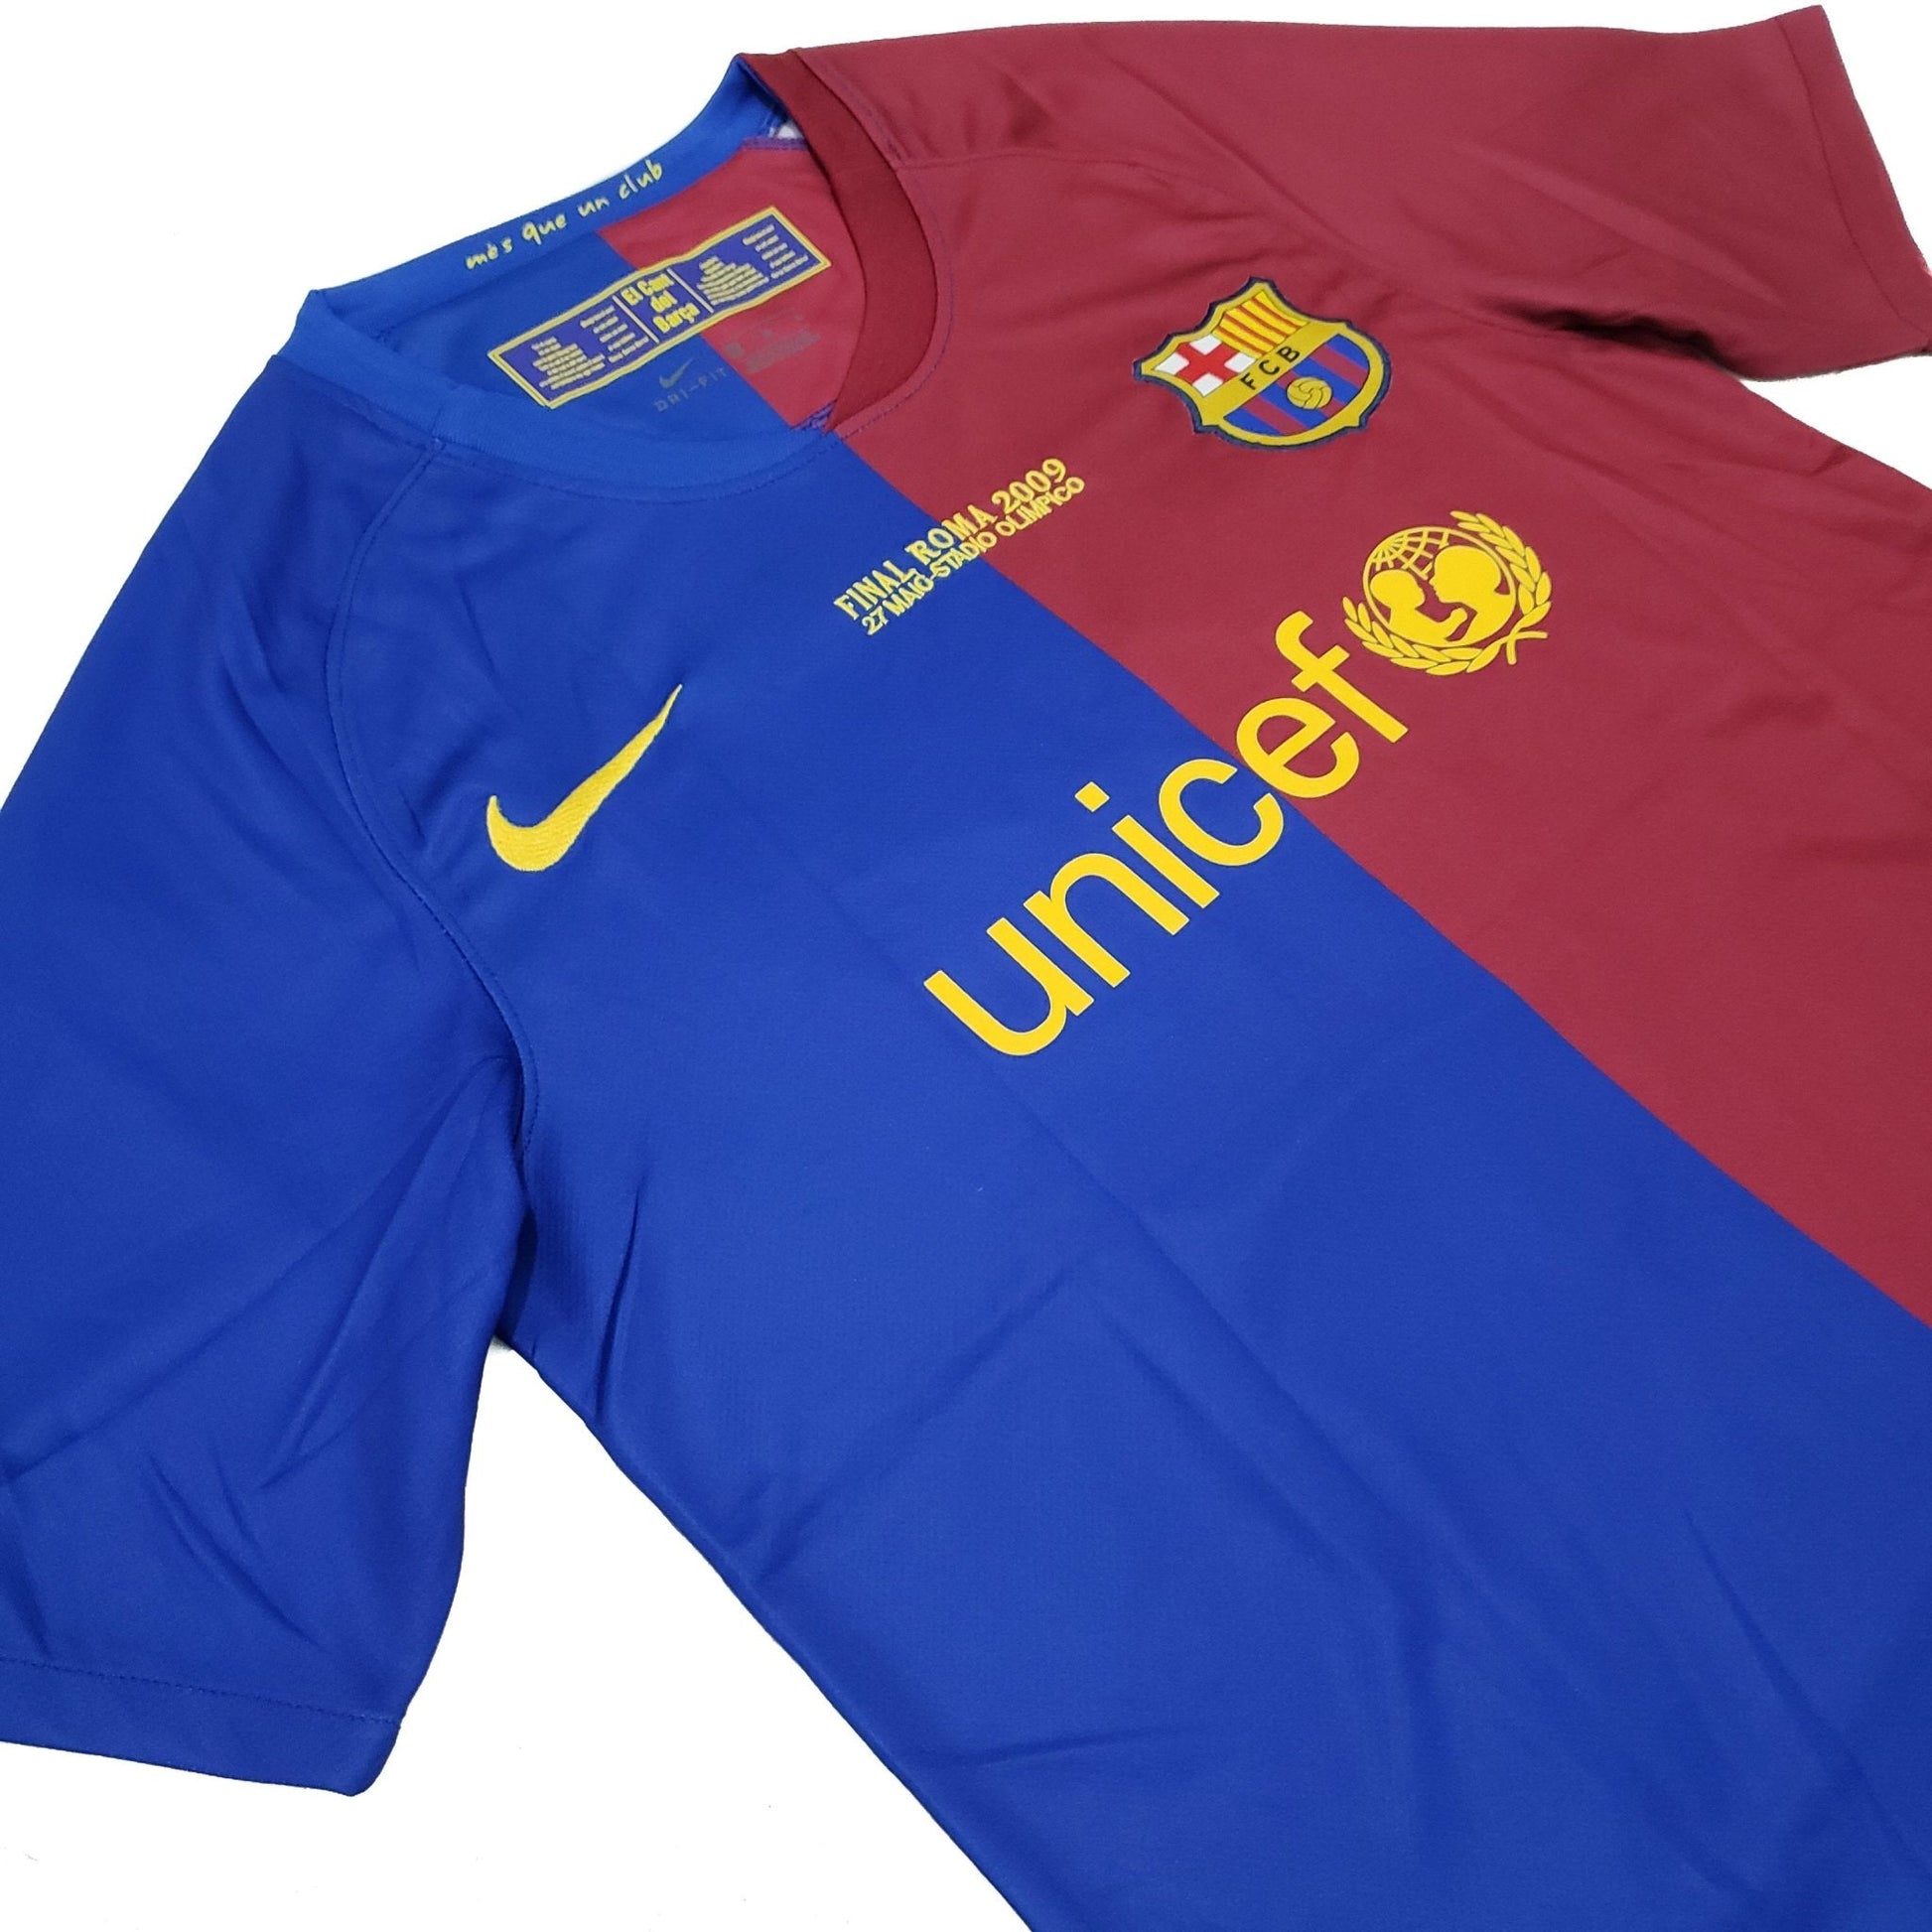 Camiseta Titular Barcelona 2008-2009 UCL